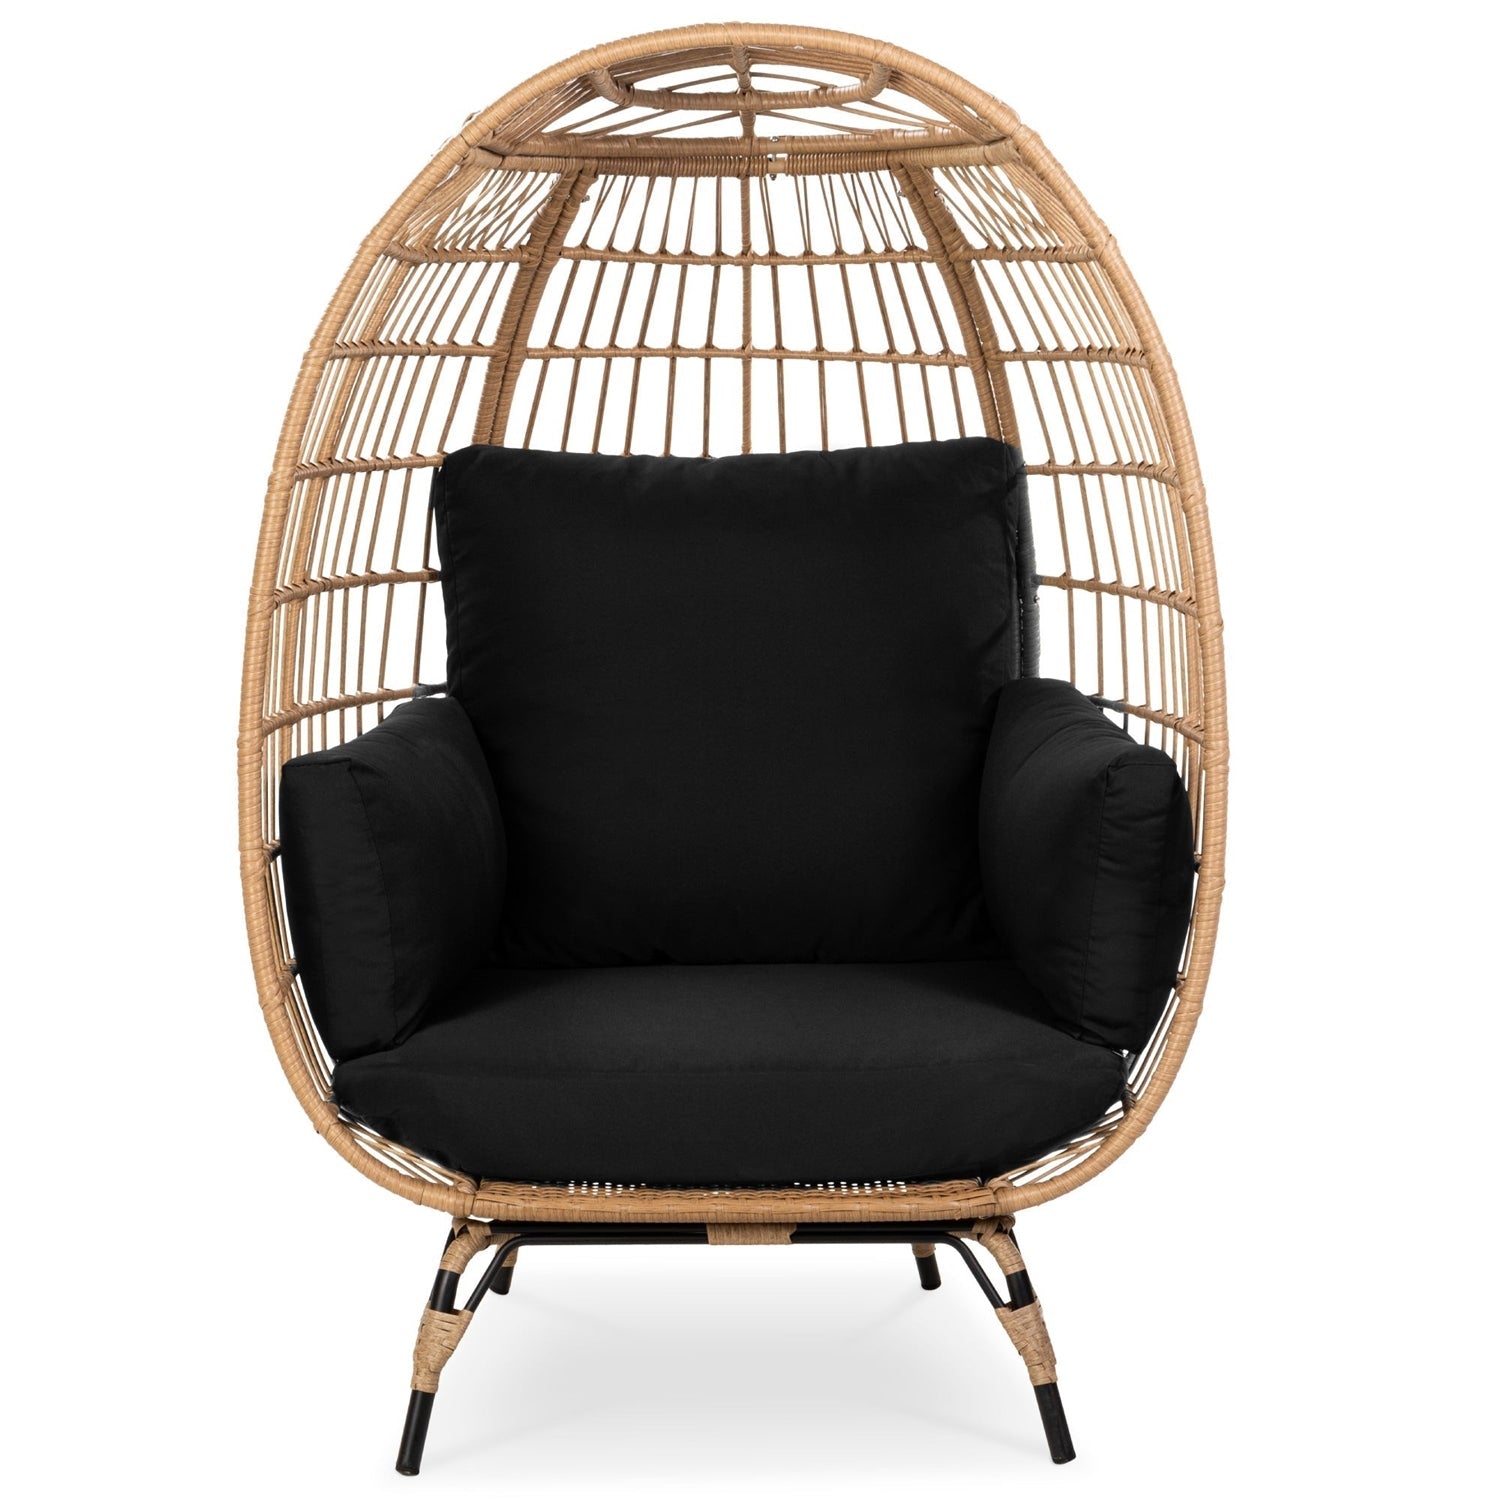 Oversized Patio Lounger Indoor/Outdoor Wicker Egg Chair Black